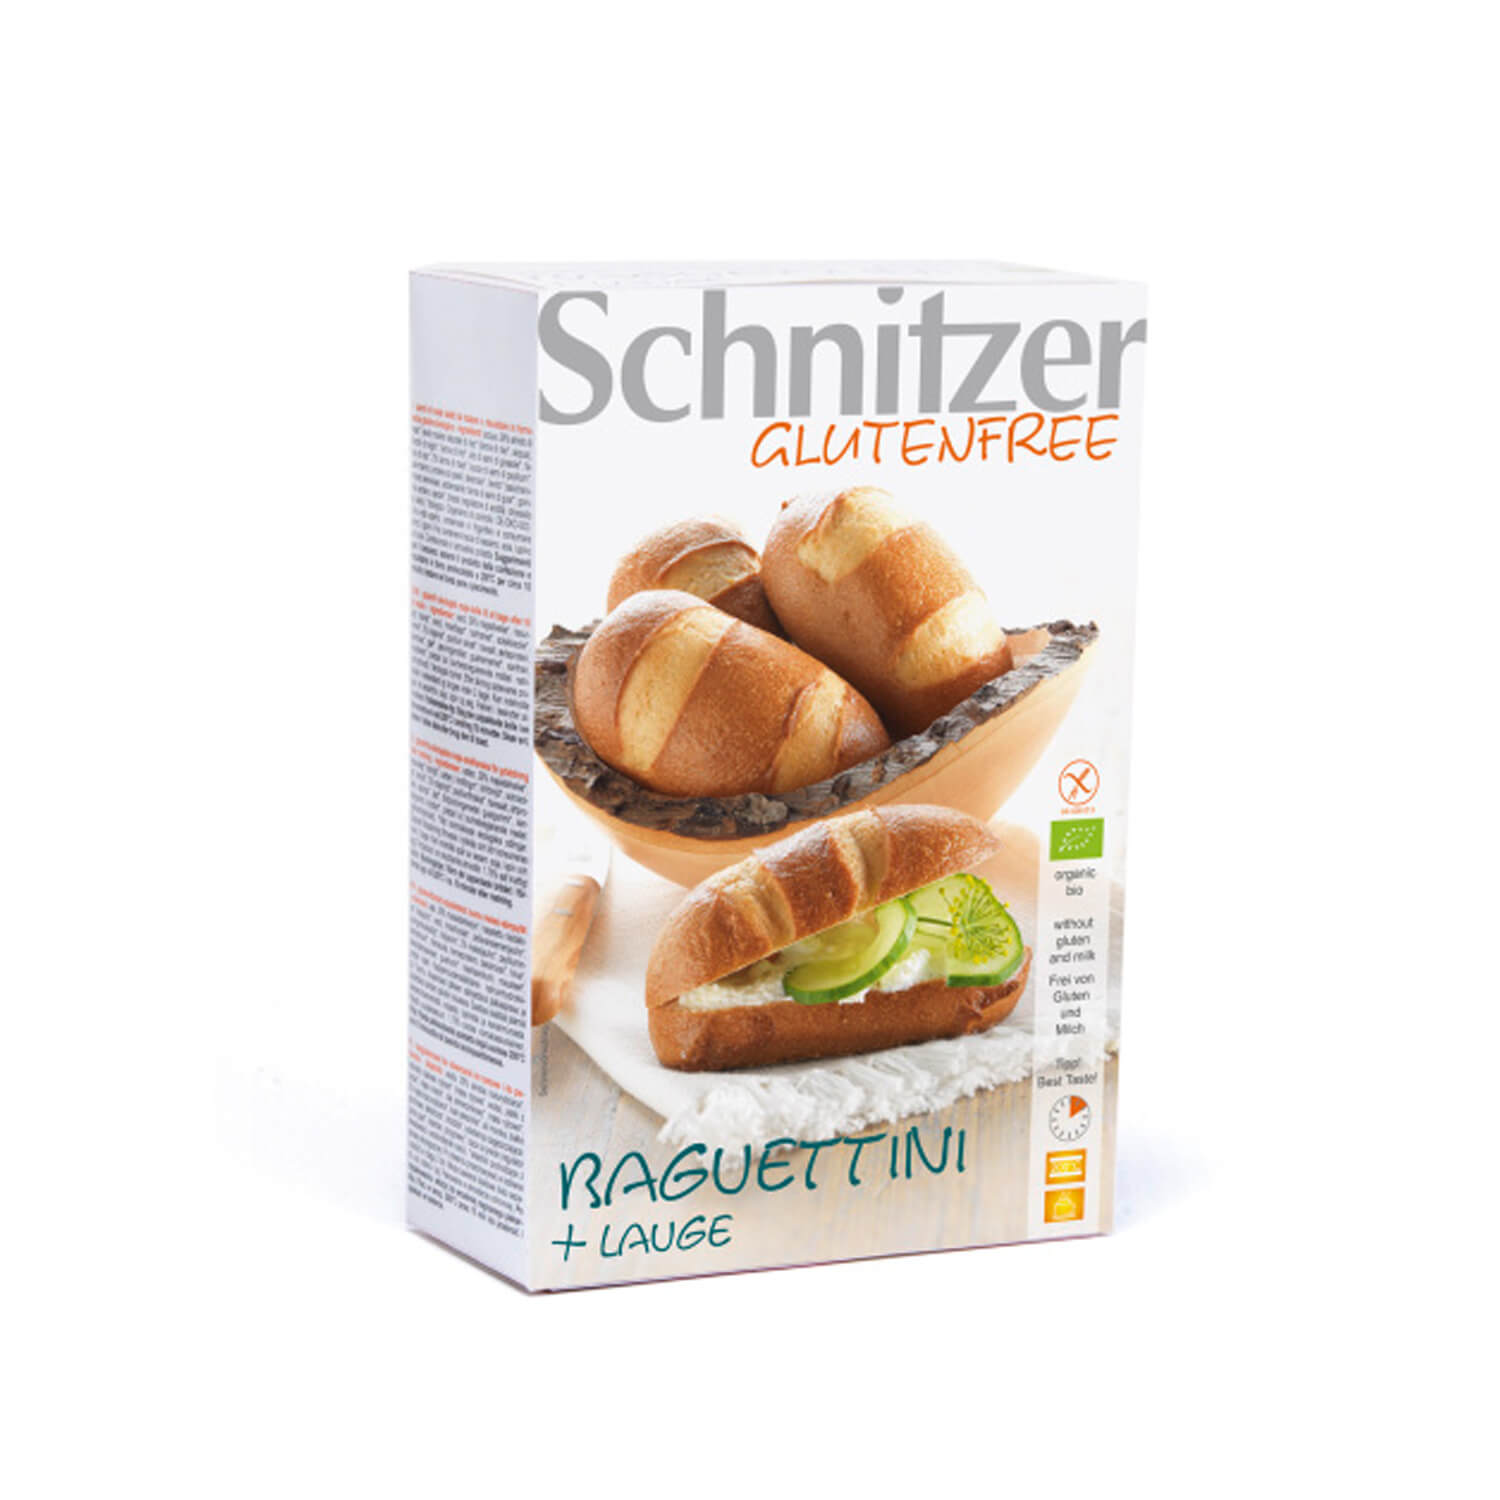 Bagetky Schnitzer malé bezgluténové 250g